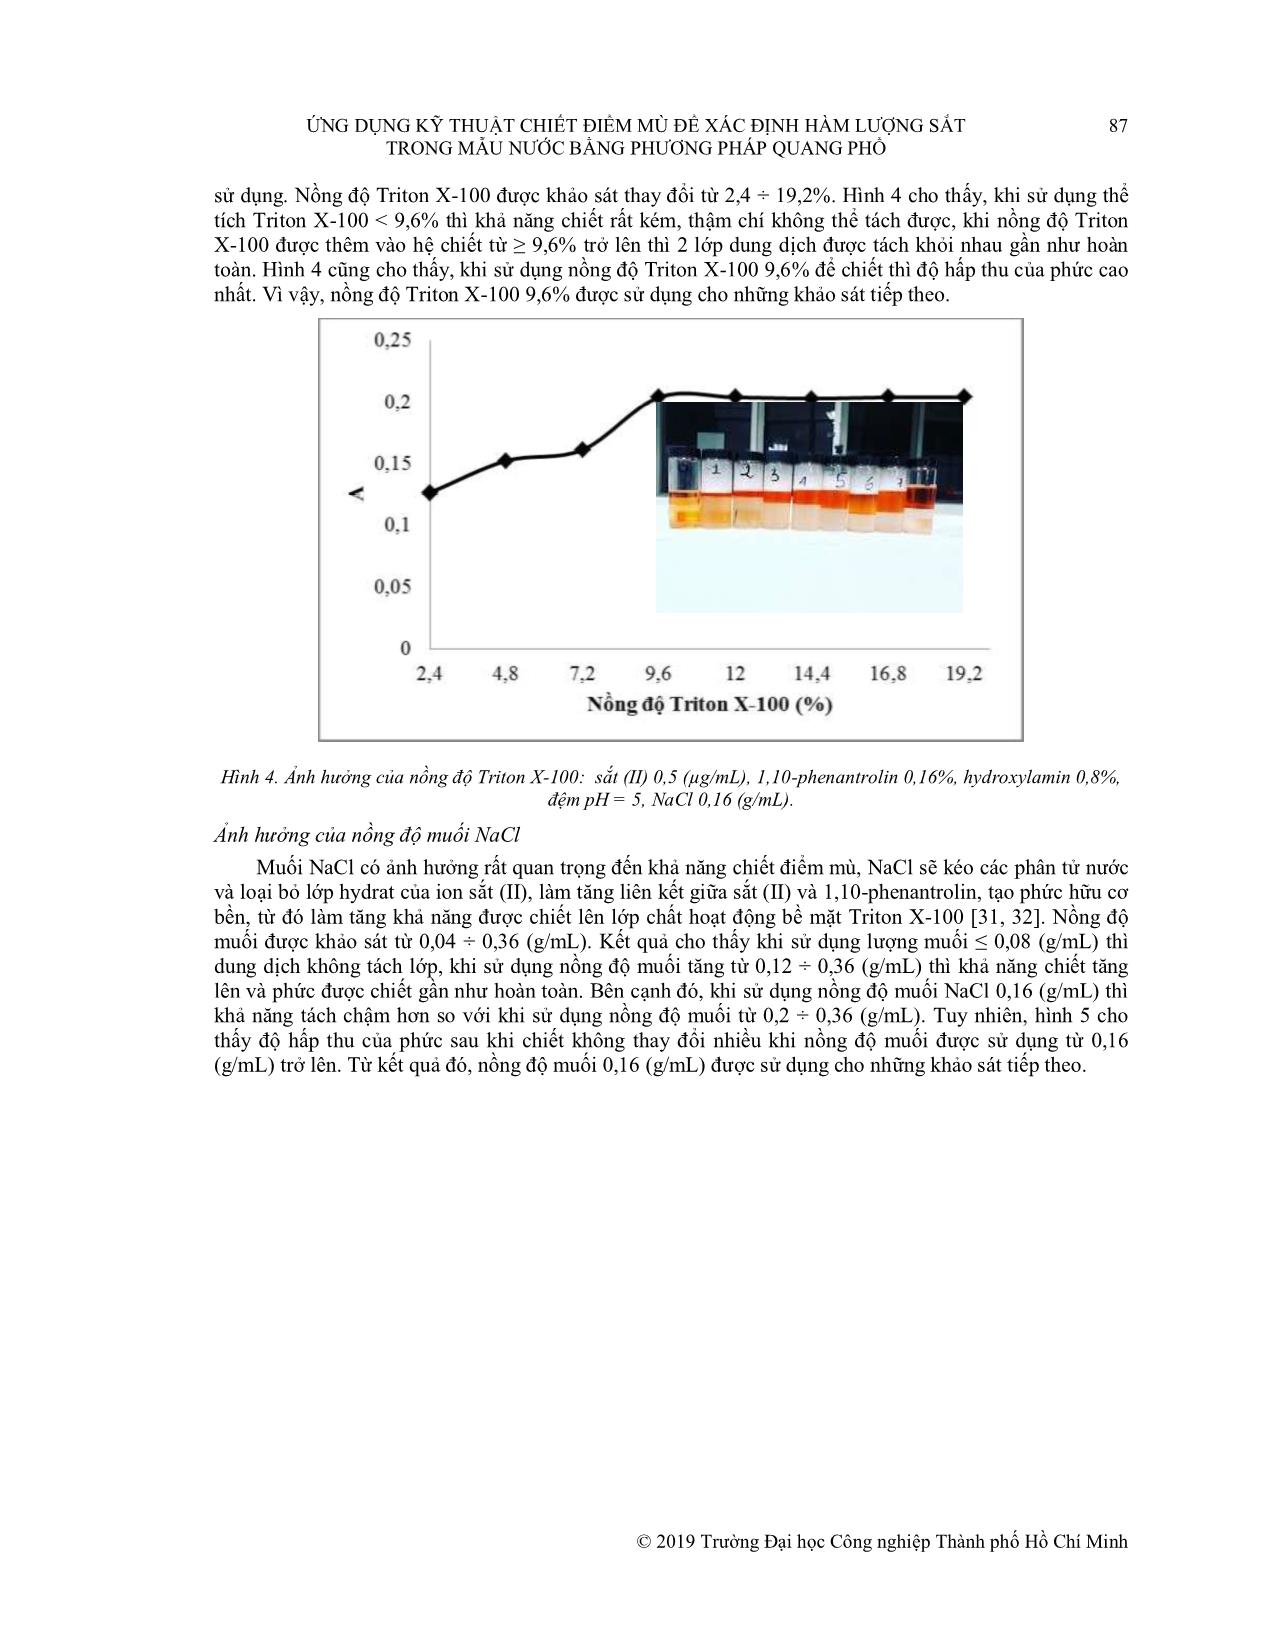 Ứng dụng kỹ thuật chiết điểm mù để xác định hàm lượng sắt trong mẫu nước bằng phương pháp quang phổ trang 5